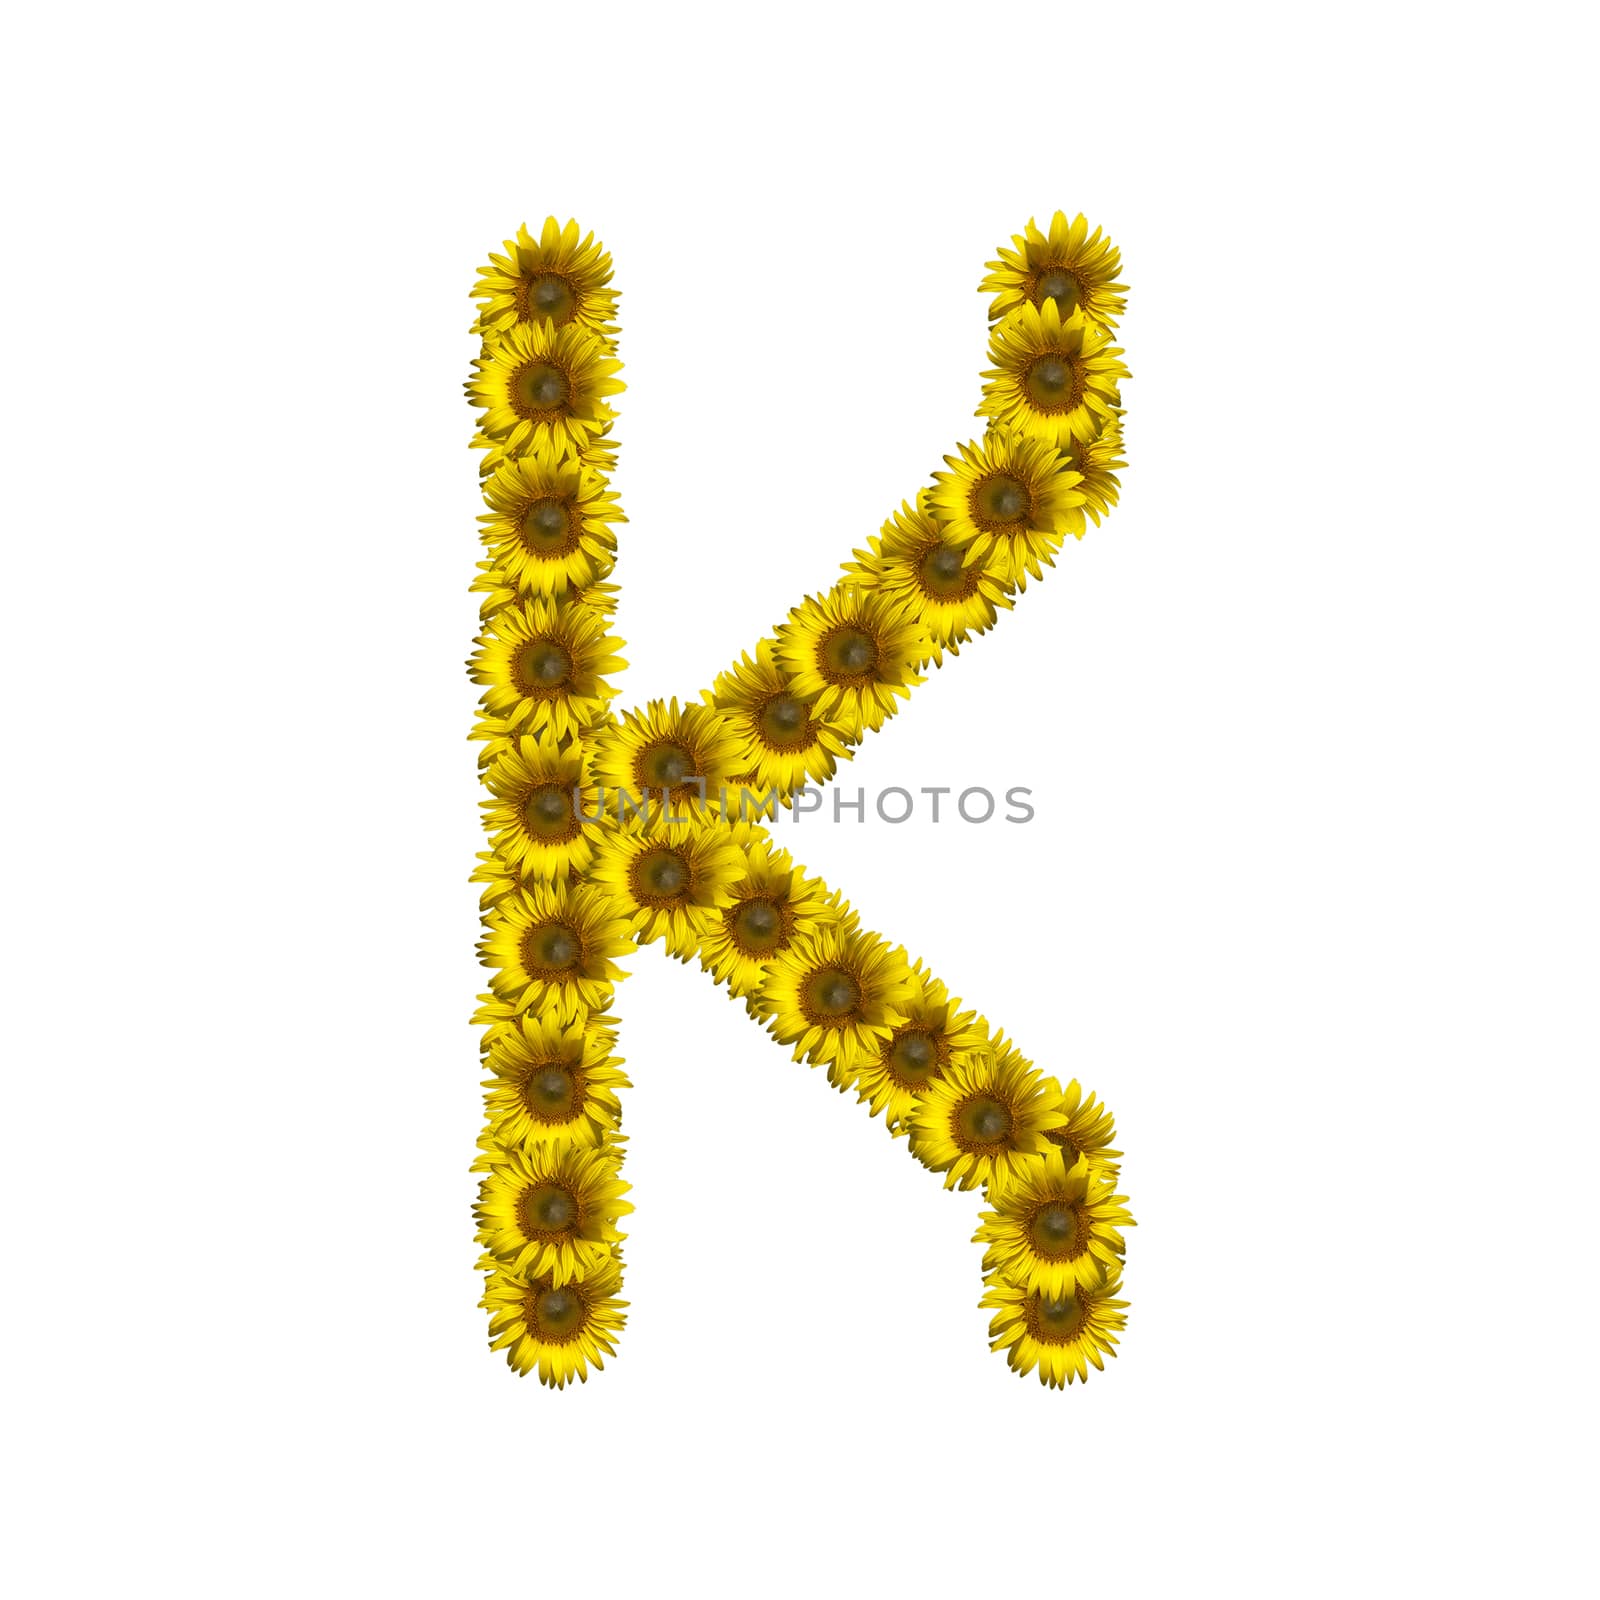 Sunflower alphabet isolated on white background, letter K